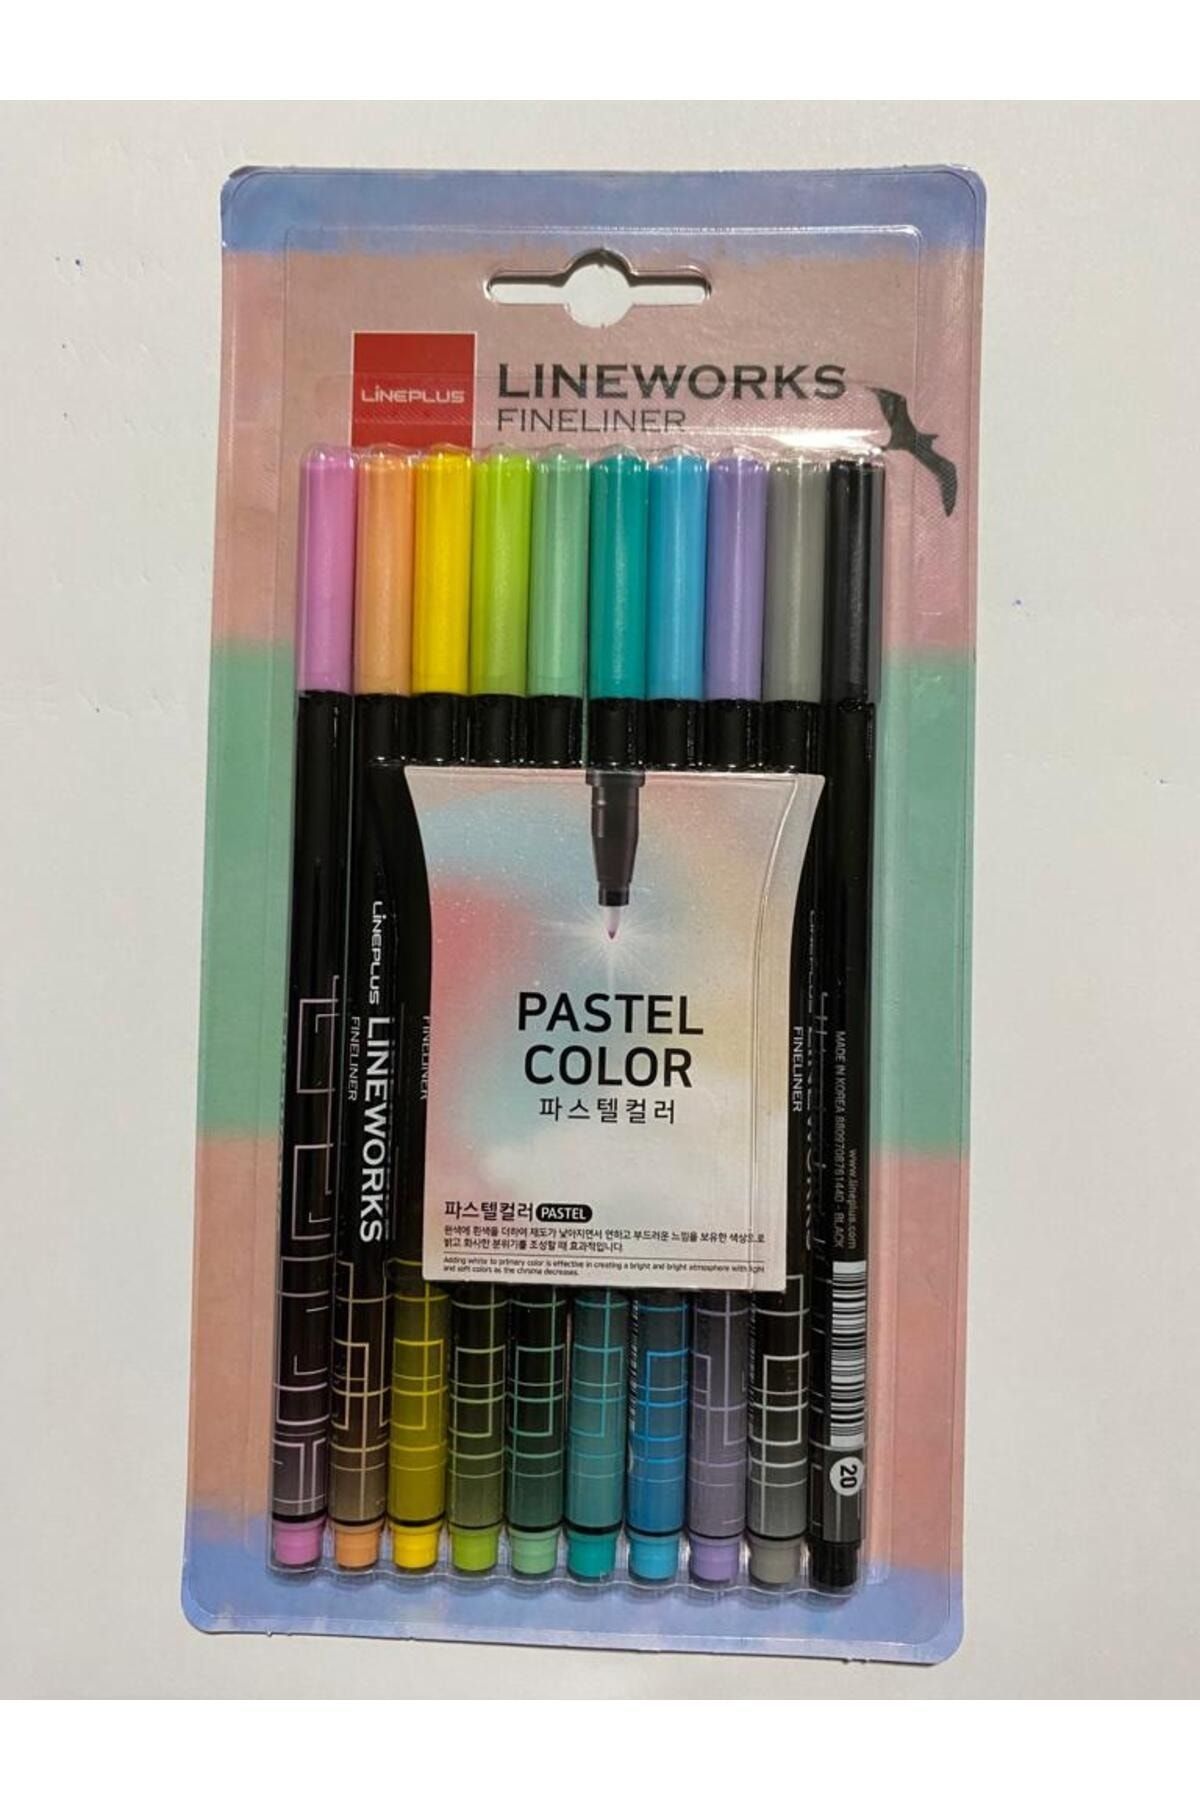 Lineplus Fineliner Pastel Renk 10' lu Kalem Seti